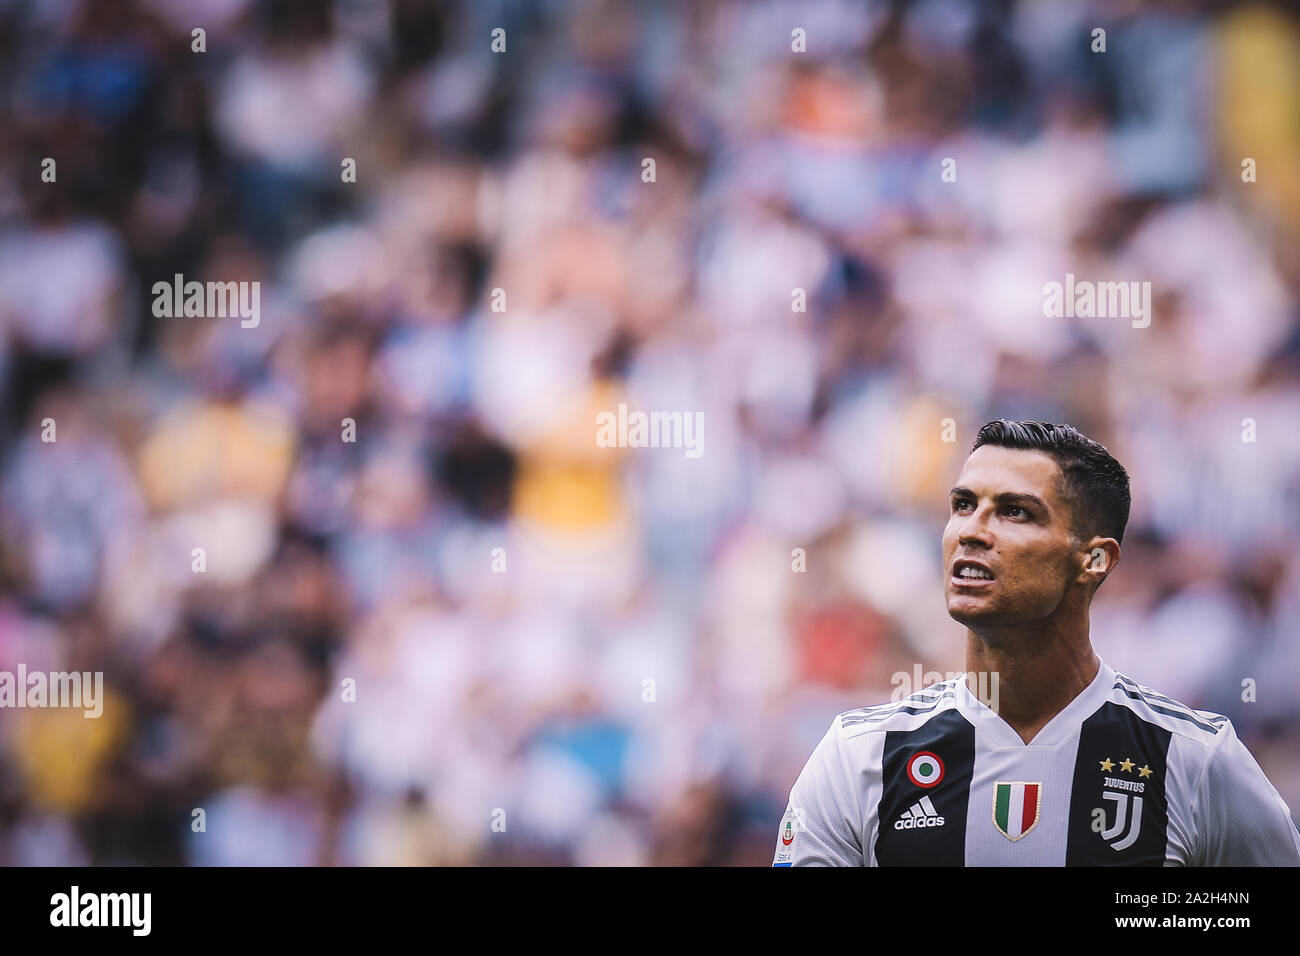 Cristiano Ronaldo jouant pour l'équipe de football de la Juventus en Italie Banque D'Images